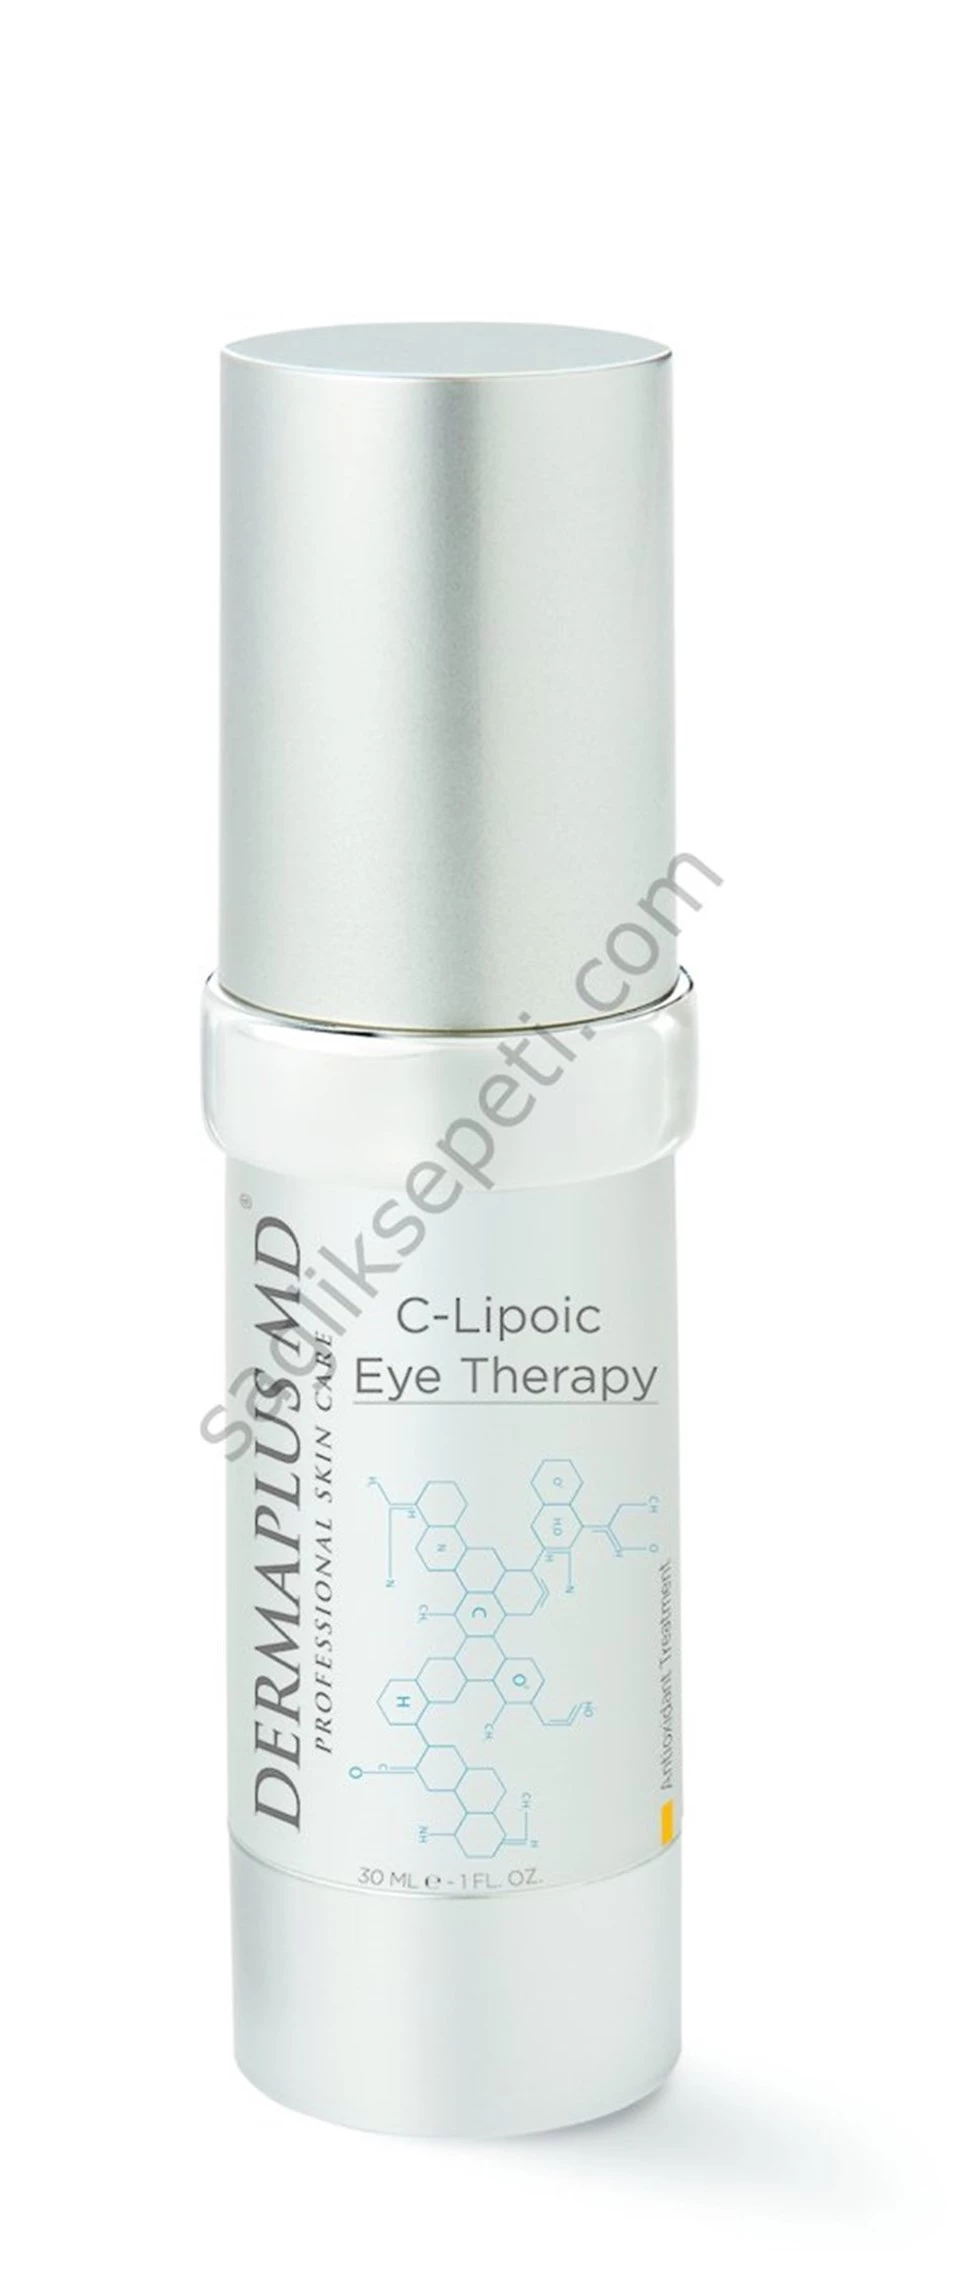 DermaPlus Md C-Lipoic Eye Therapy 14.2g